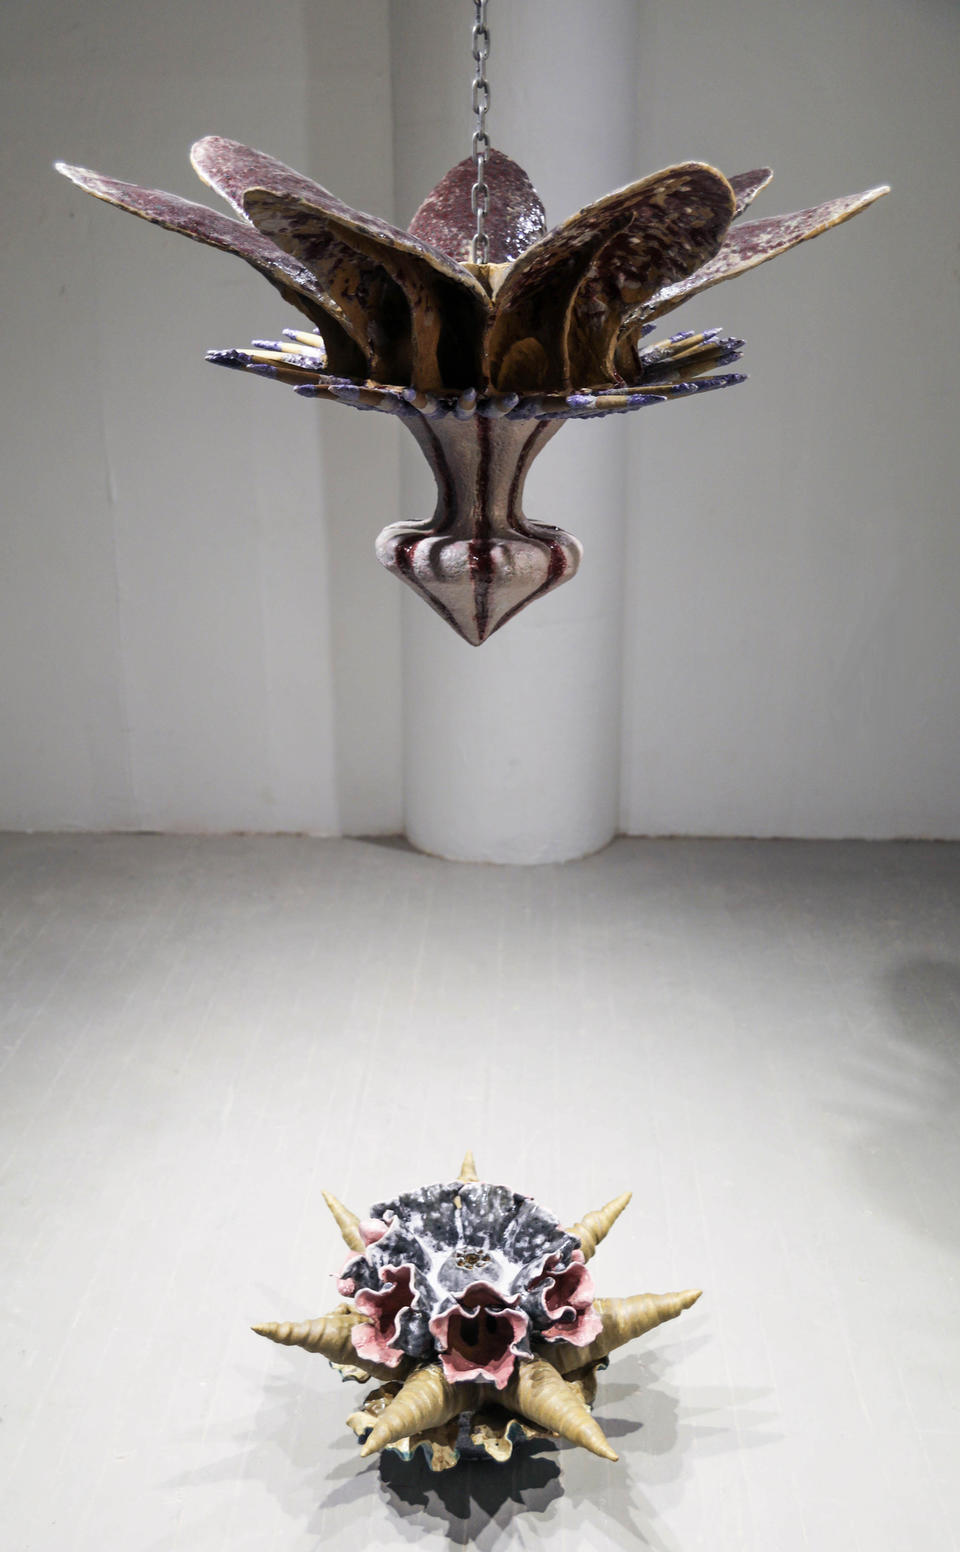 Ceramic installation by Jasper Johns